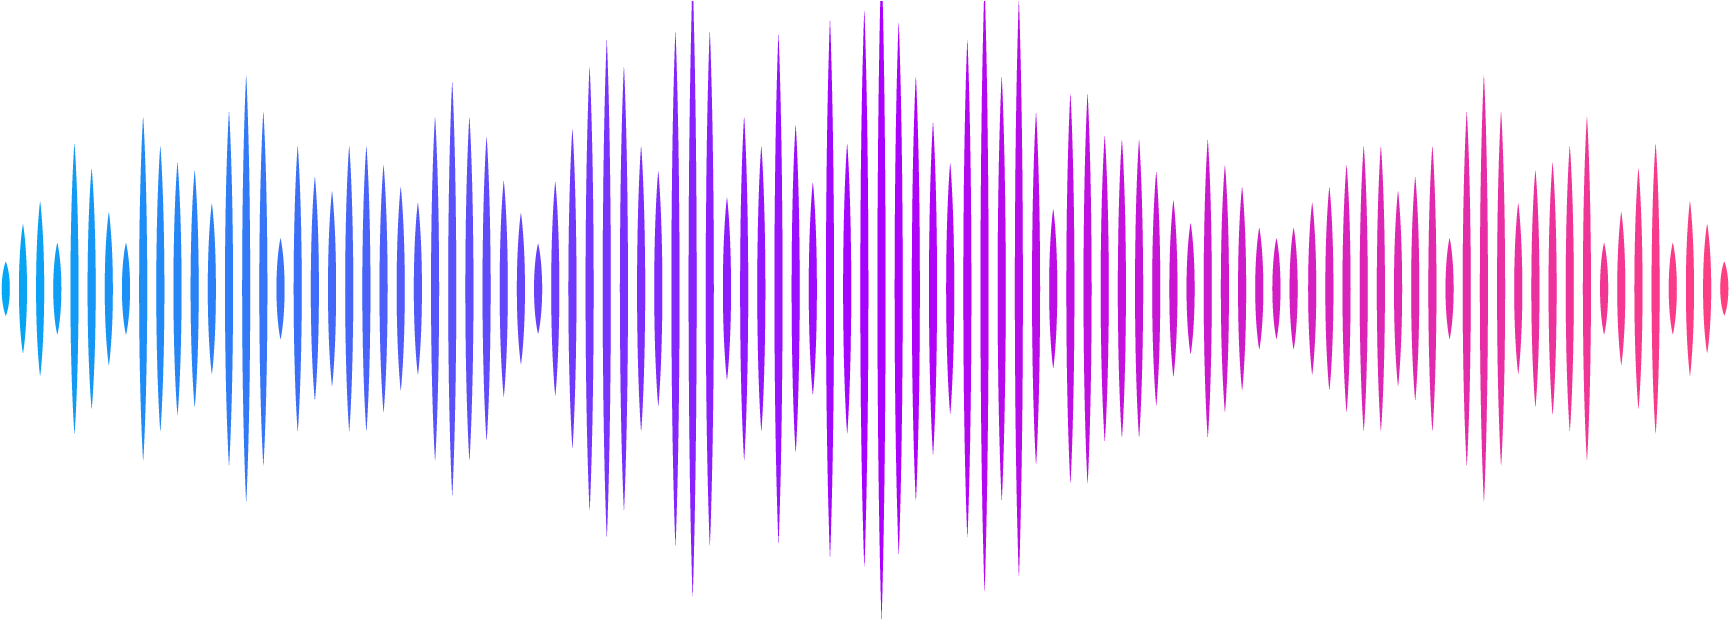 Музыкальное колебание звука. Звуковая волна. Звуковая дорожка. Графическое изображение звука. Звуковая волна эквалайзер.